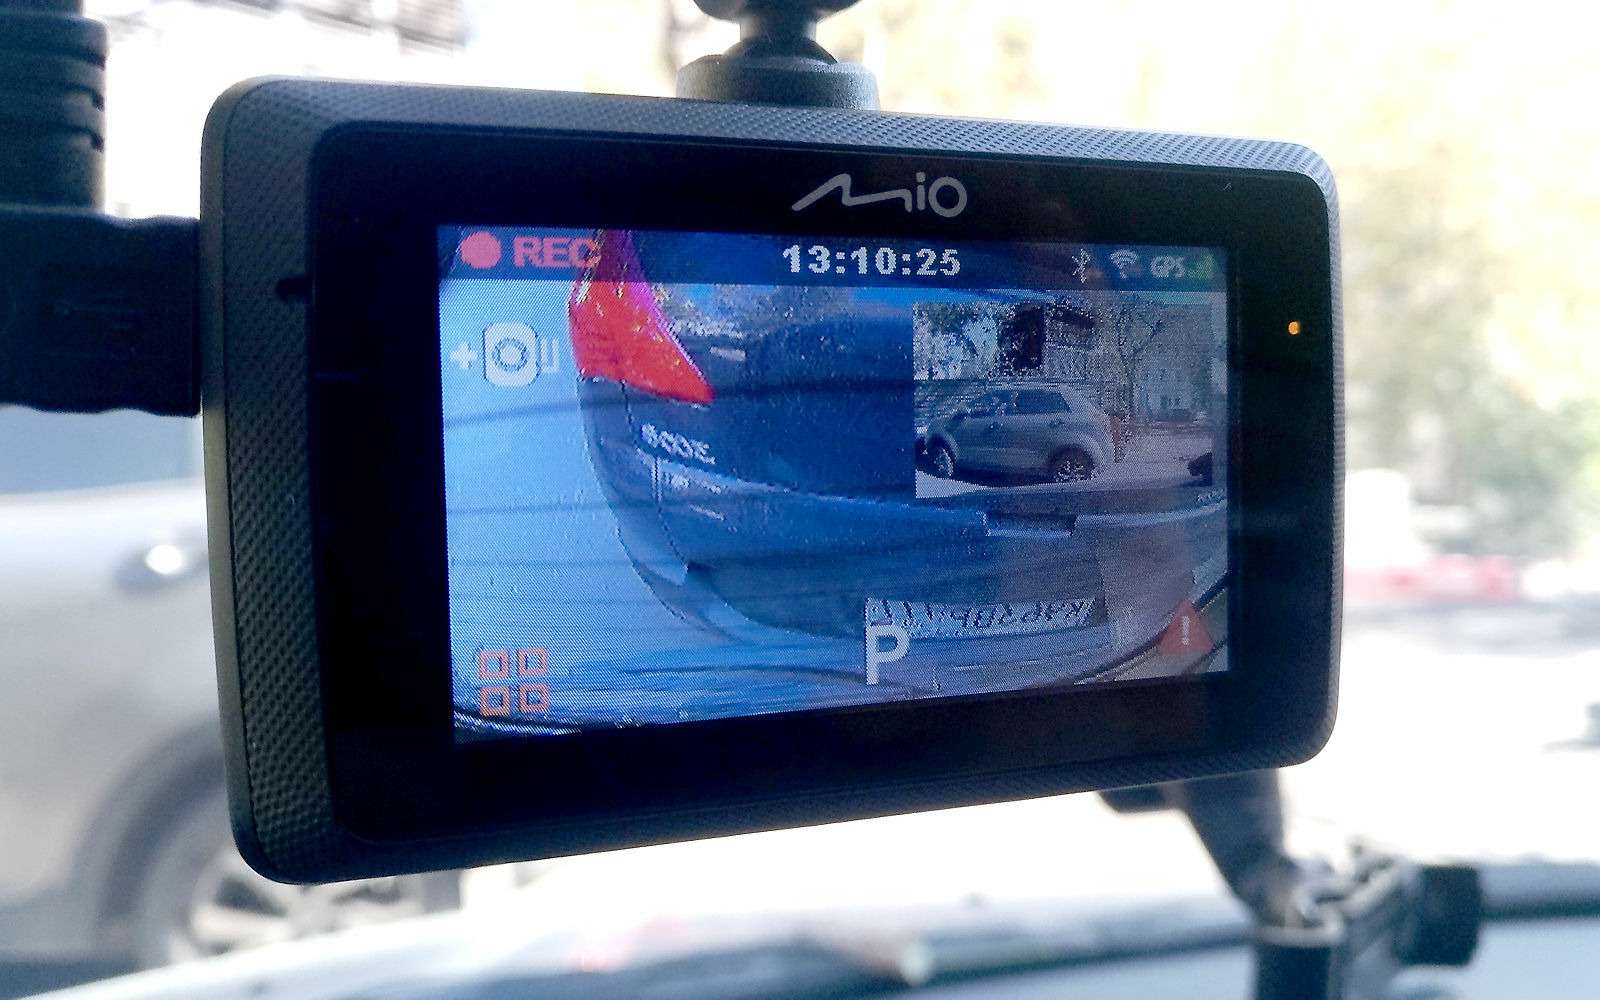 Задняя камера на Ларгусе позволяет разглядеть происходящее в непосредственной близости от машины. Однако при таком угле атаки камера уже не справляется с основной задачей. В случае ДТП, траекторию движения автомобиля, который врезался в вас сзади, по видеозаписи не понять.